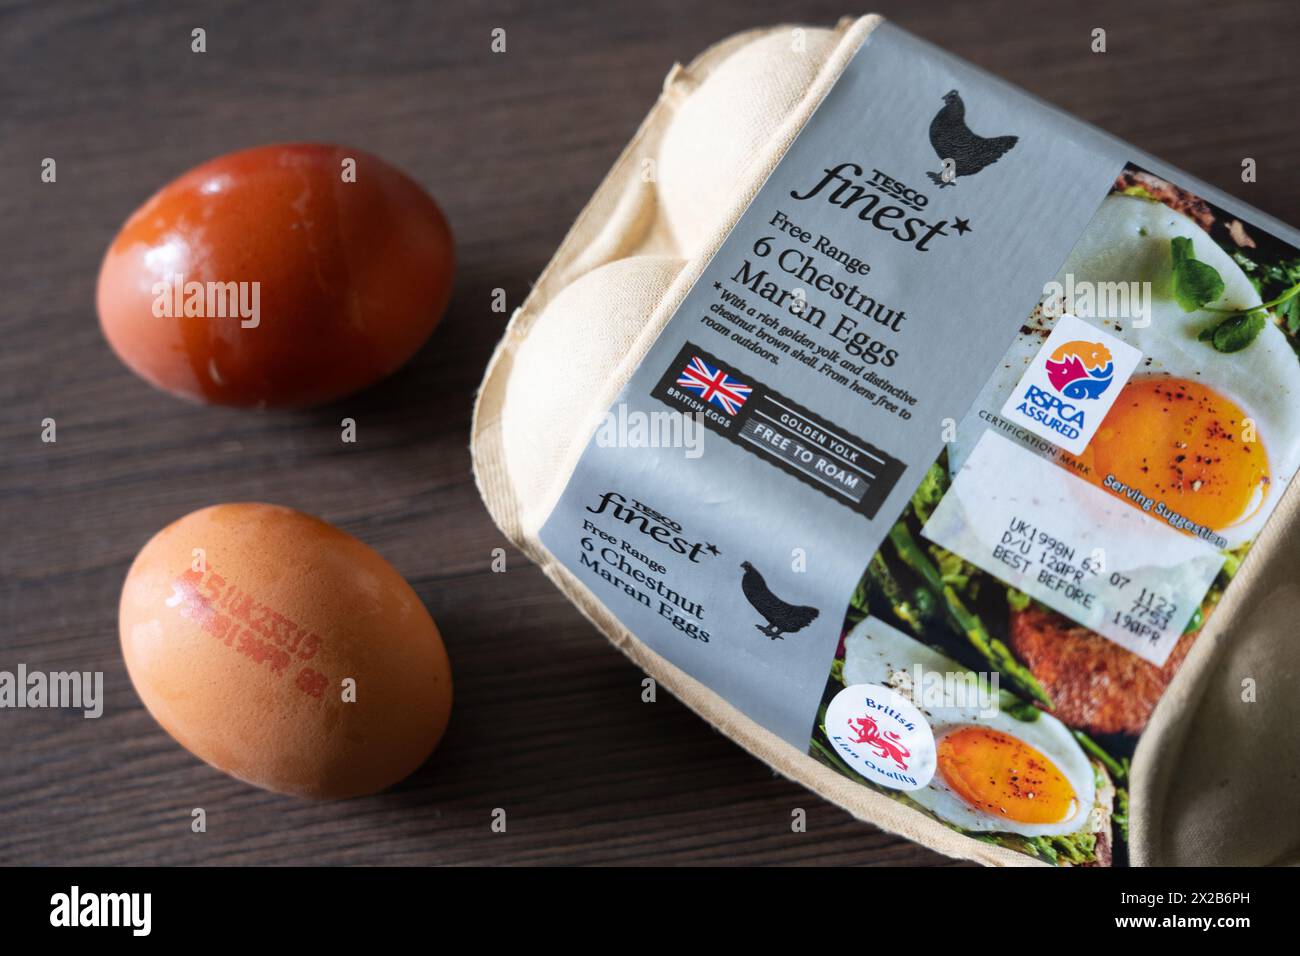 Tesco Finest Eigenmarke Free Range Chestnut Maran Eies and a Eierkarton, England. Konzept: Supermarkteier, Hühnereier, britische Löwenqualität Stockfoto